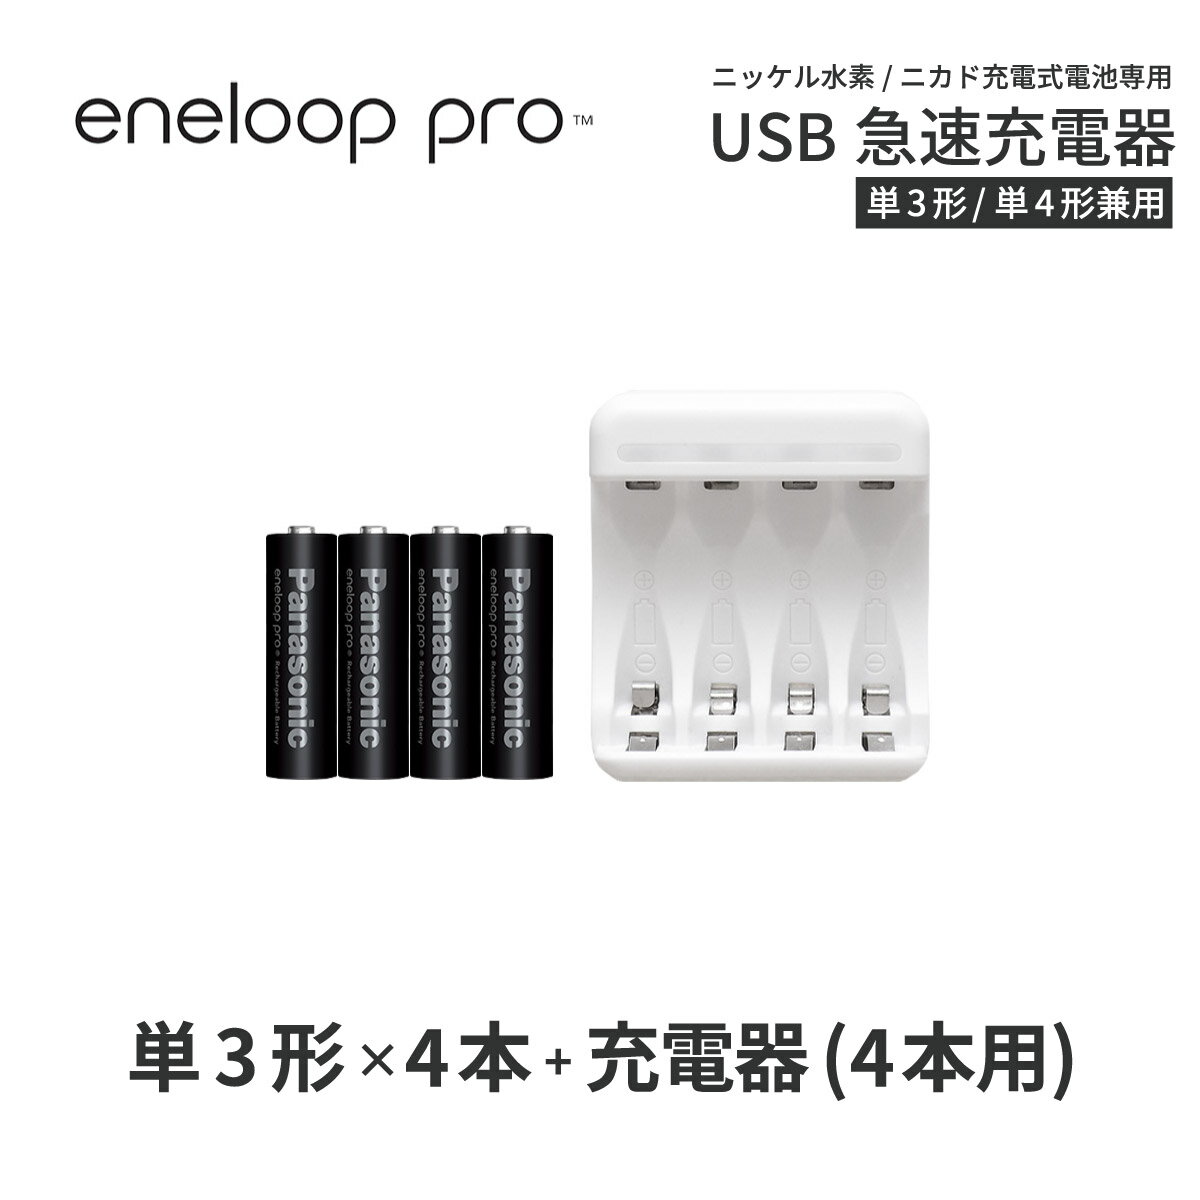 　　　 商品名 eneloop pro / エネループ プロ 単3形電池　ハイエンドモデル 電池種別 ニッケル水素電池 繰り返し使用可能回数 500回 容量 2500mAh (min) 電圧 1.2v 寸法 約Ф14.5×50.5mm 質量 約30g（1本あたり） 製造国 日本 　　　 商品名 Pool/プール USB充電器 最大同時充電本数 4本 入力 MicroUSB 5V 1A 出力 1.2V=1800mA (Max) 付属品 MicroUSBケーブル / USB-ACアダプタ 対応電池 ニッケル水素電池 / ニカド電池(単3形・単4形) 保証期間 6カ月